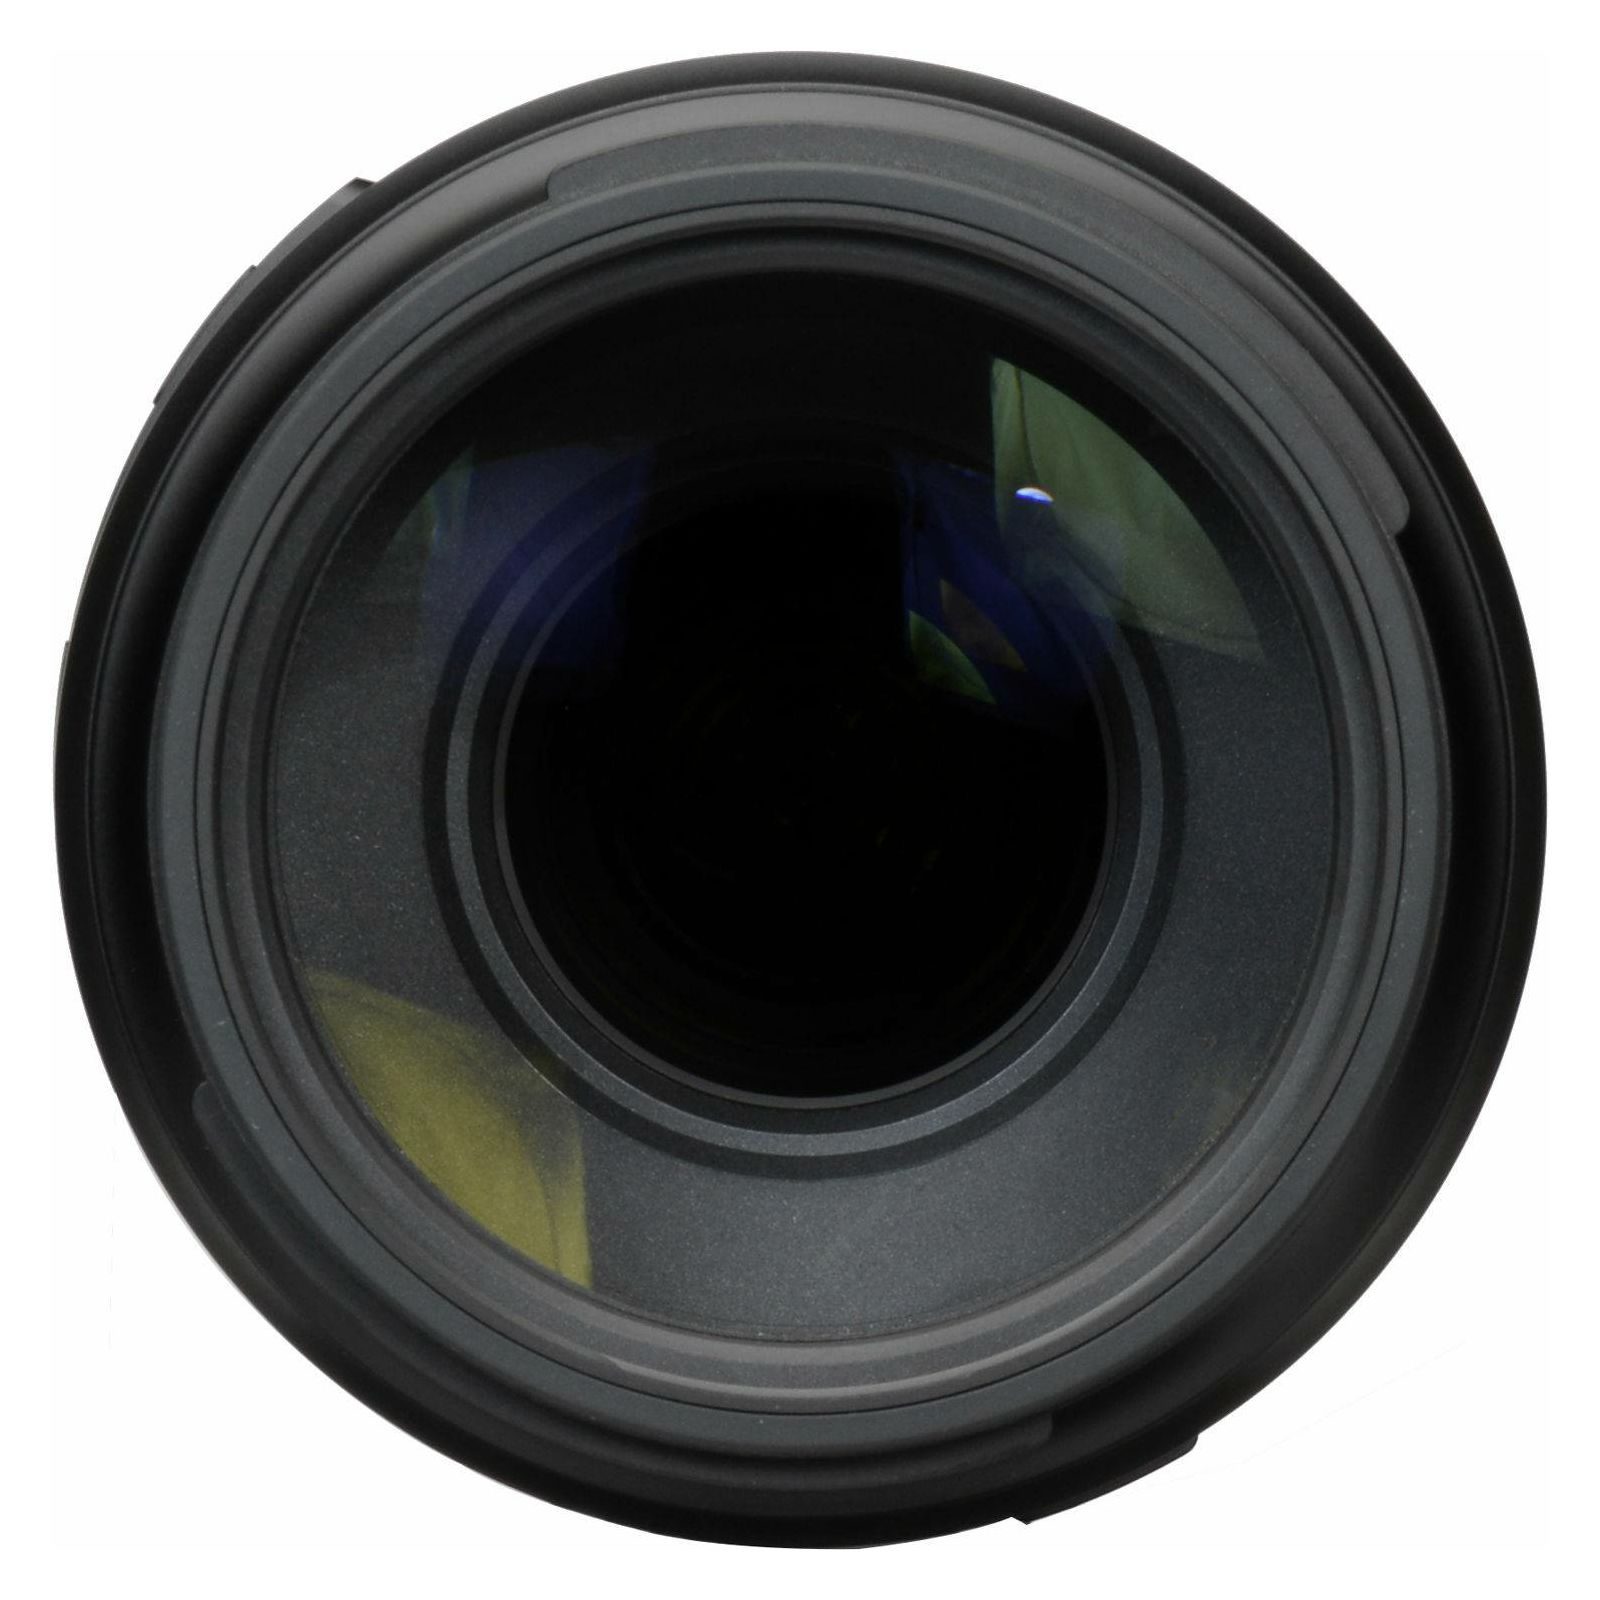 Tamron AF 100-400mm f/4.5-6.3 Di VC USD objektiv za Canon EF (A035E)